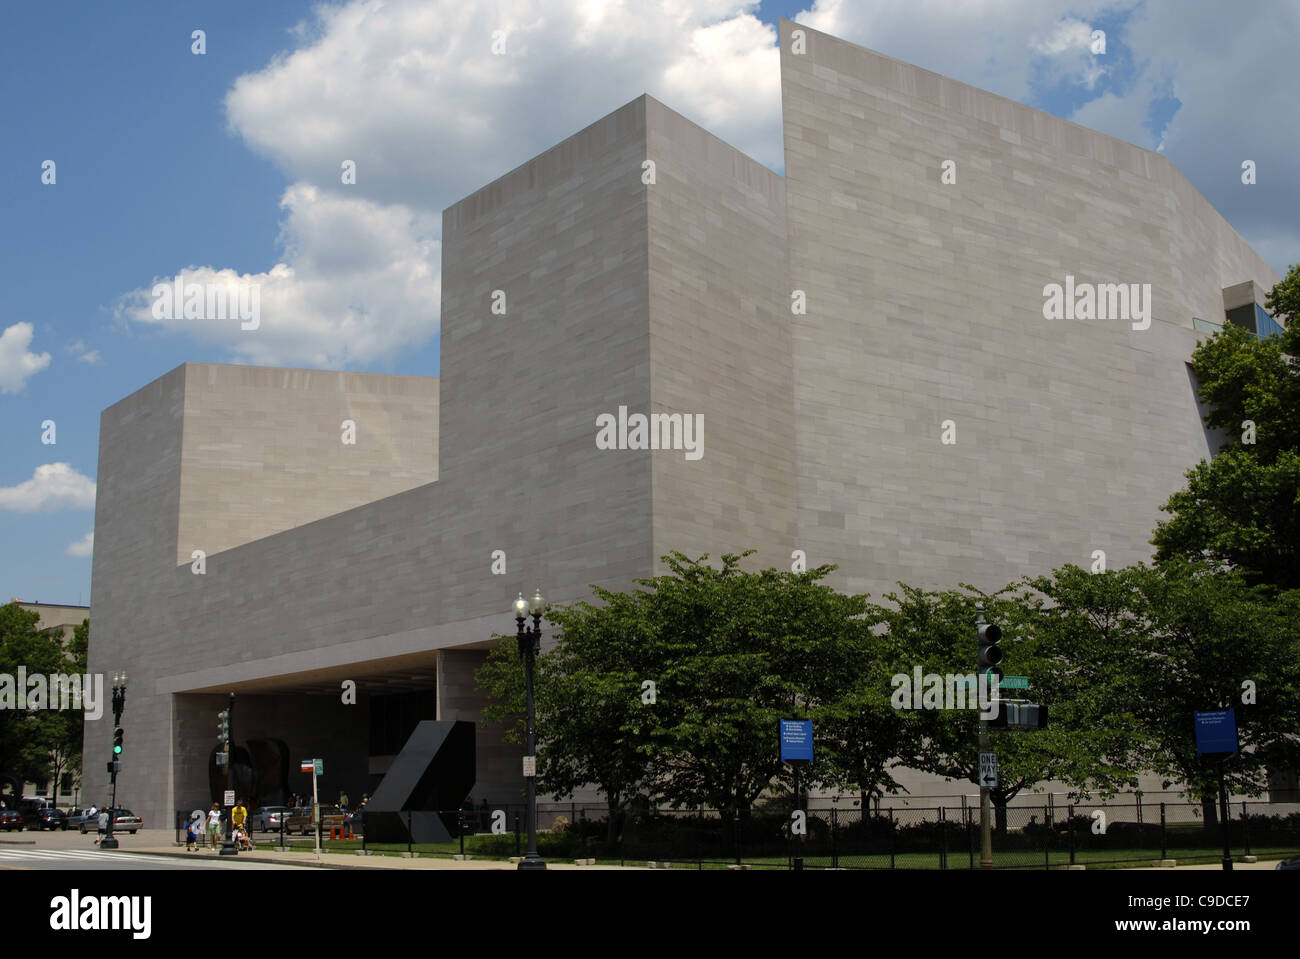 Galerie nationale d'art bâtiment est par Ieoh Ming Pei (b. 1917). Washington D.C. United States. Banque D'Images